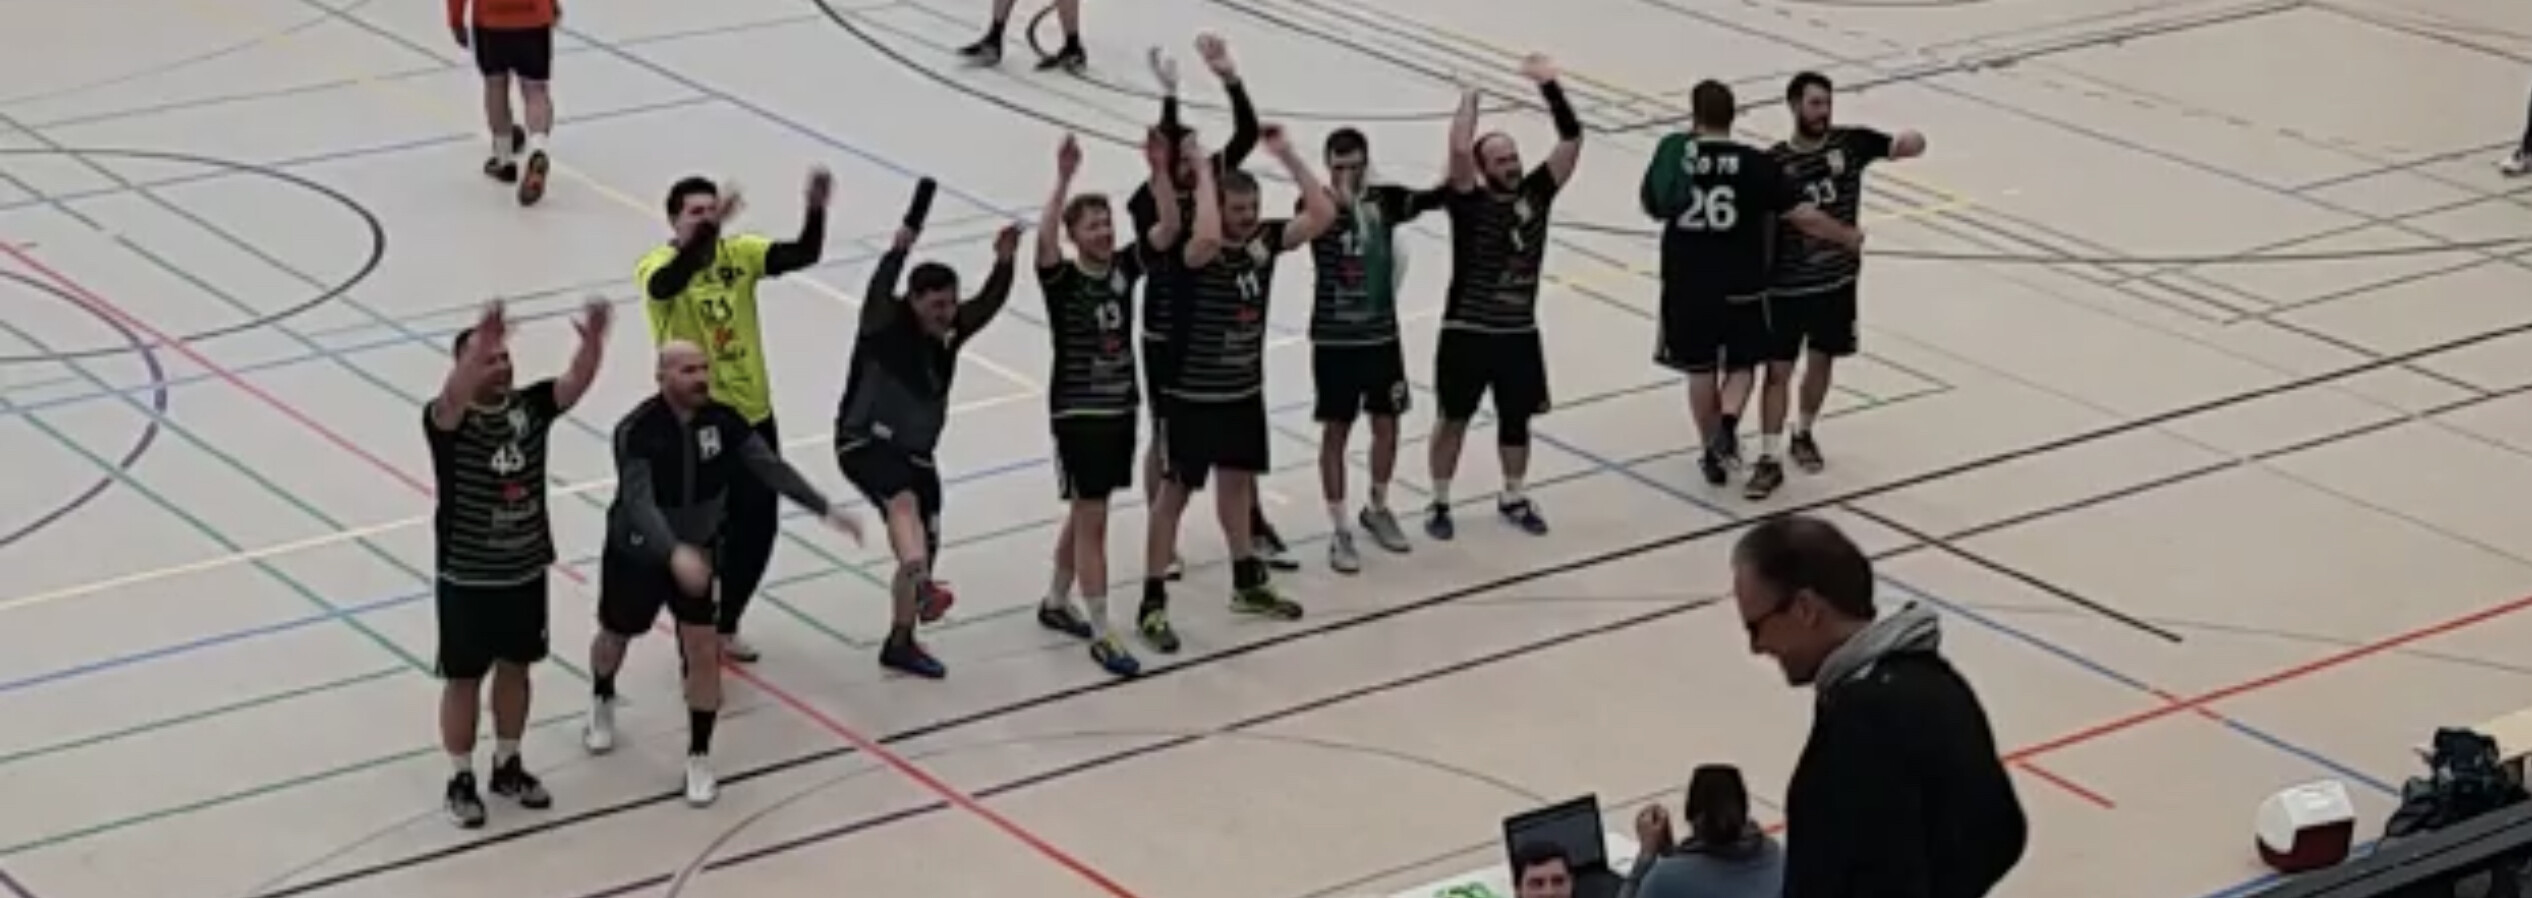 SFD gewinnt gegen TG 81 Handball